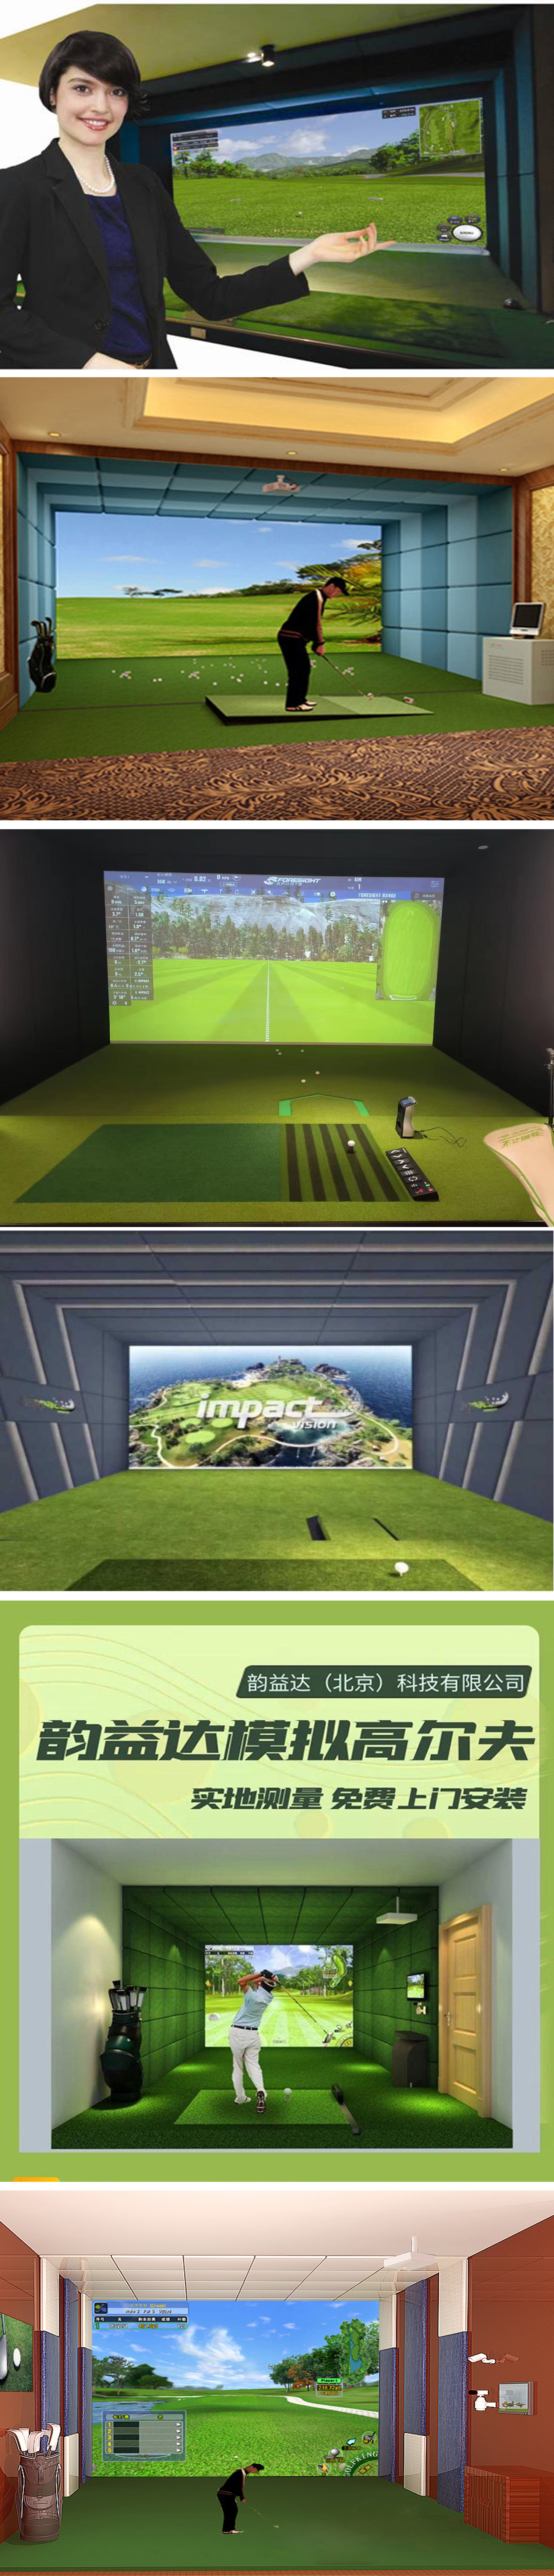 高尔夫模拟室内设备.jpg